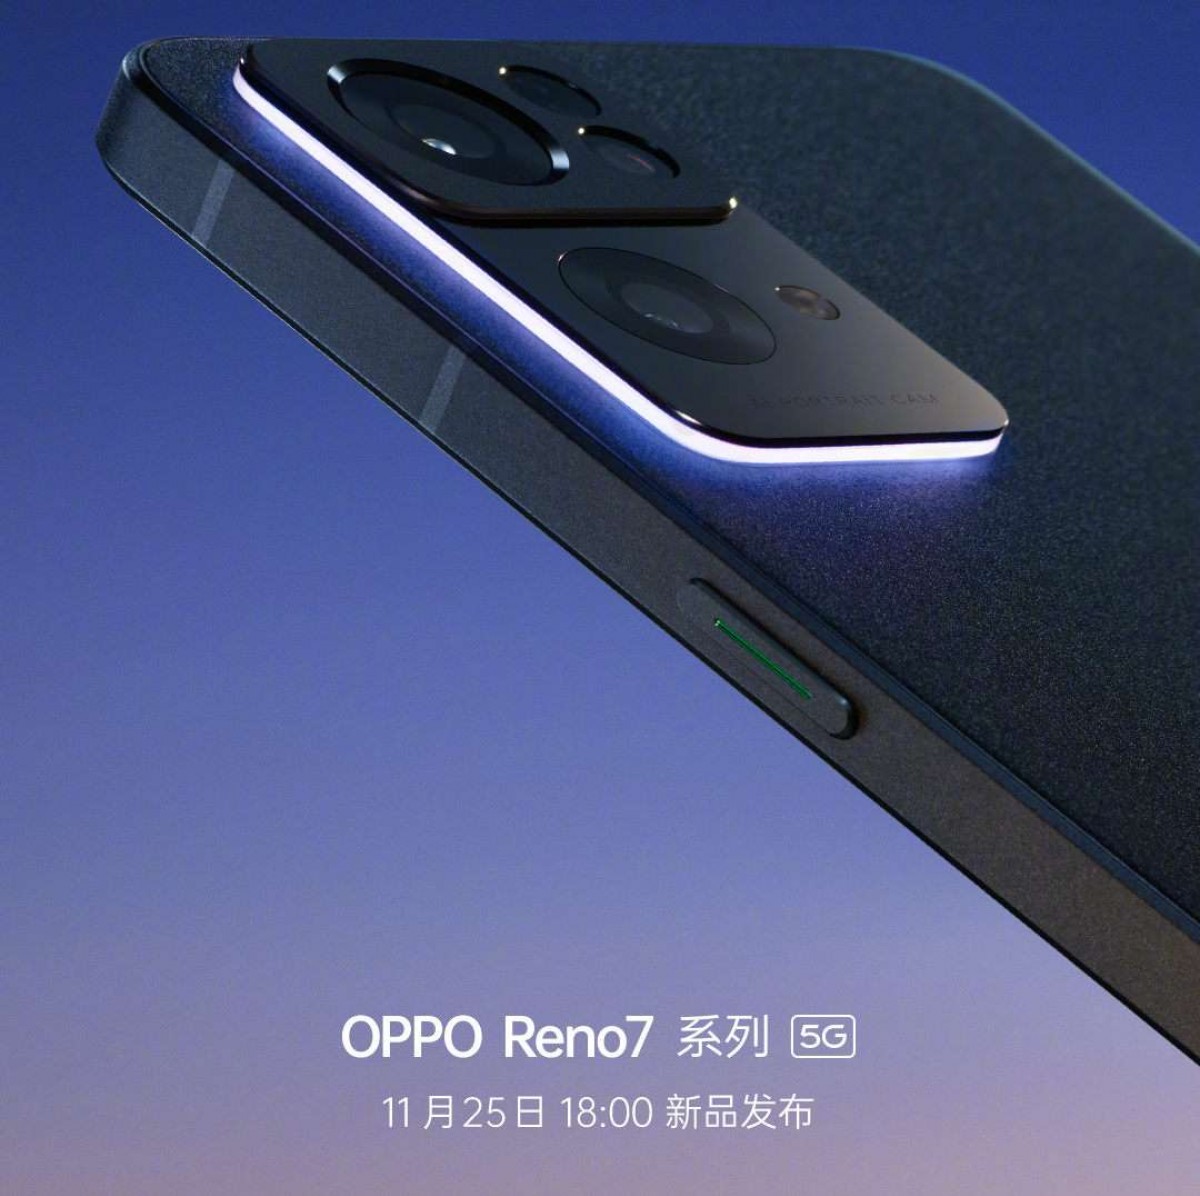 Oppo Reno7 en JD.com, disponible el 25 de noviembre, las especificaciones y los renders están aquí